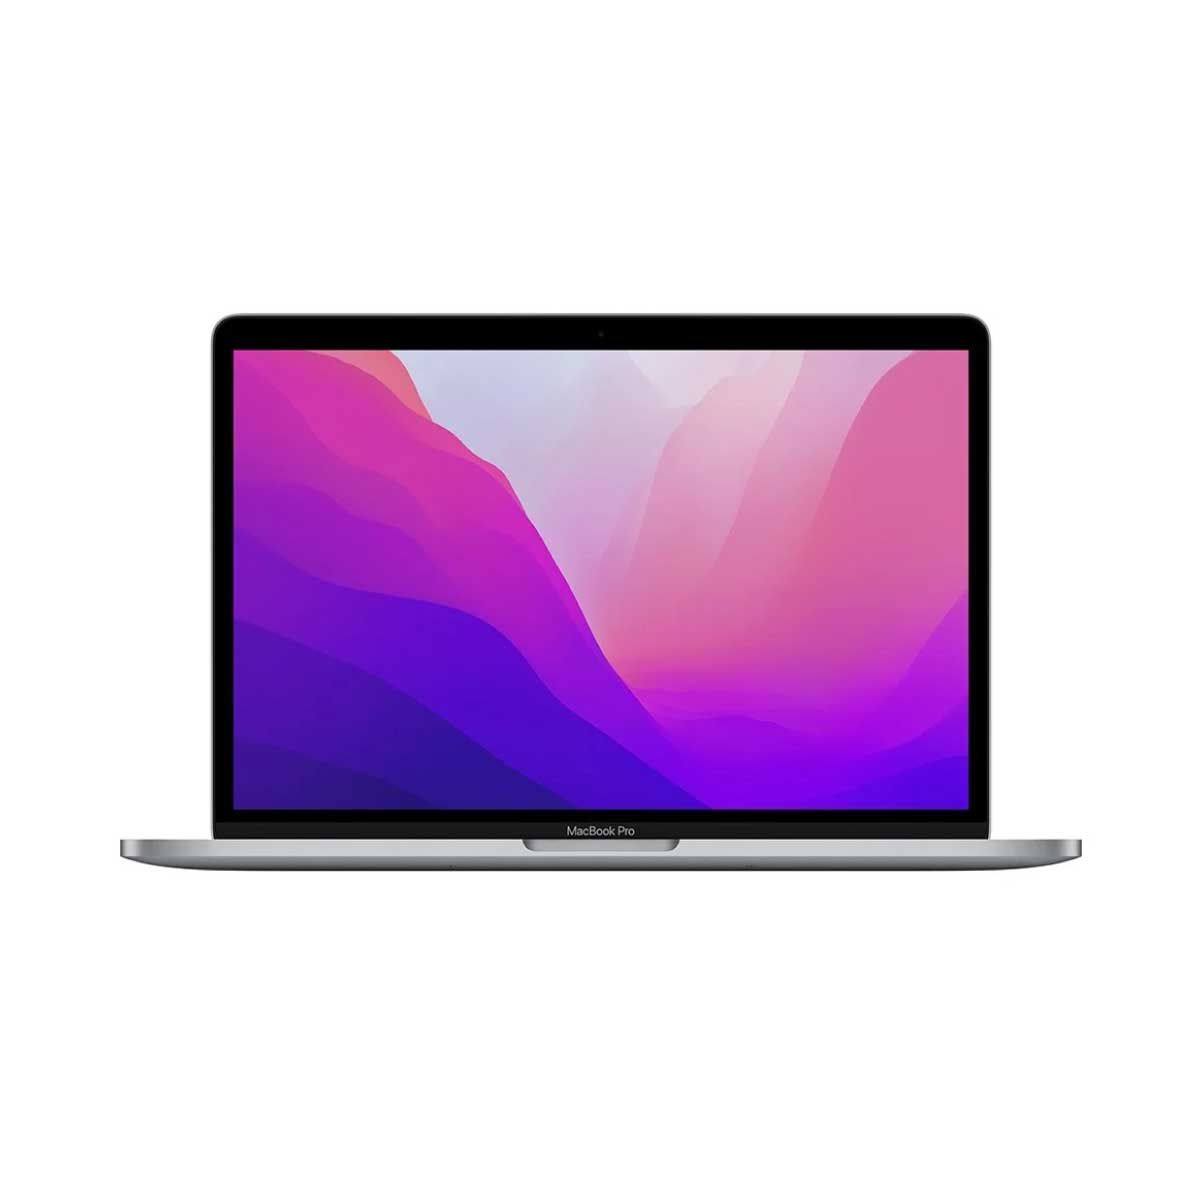 Apple MacBook Pro รุ่น 13 นิ้ว (ชิป M2) 256GB Space Gray